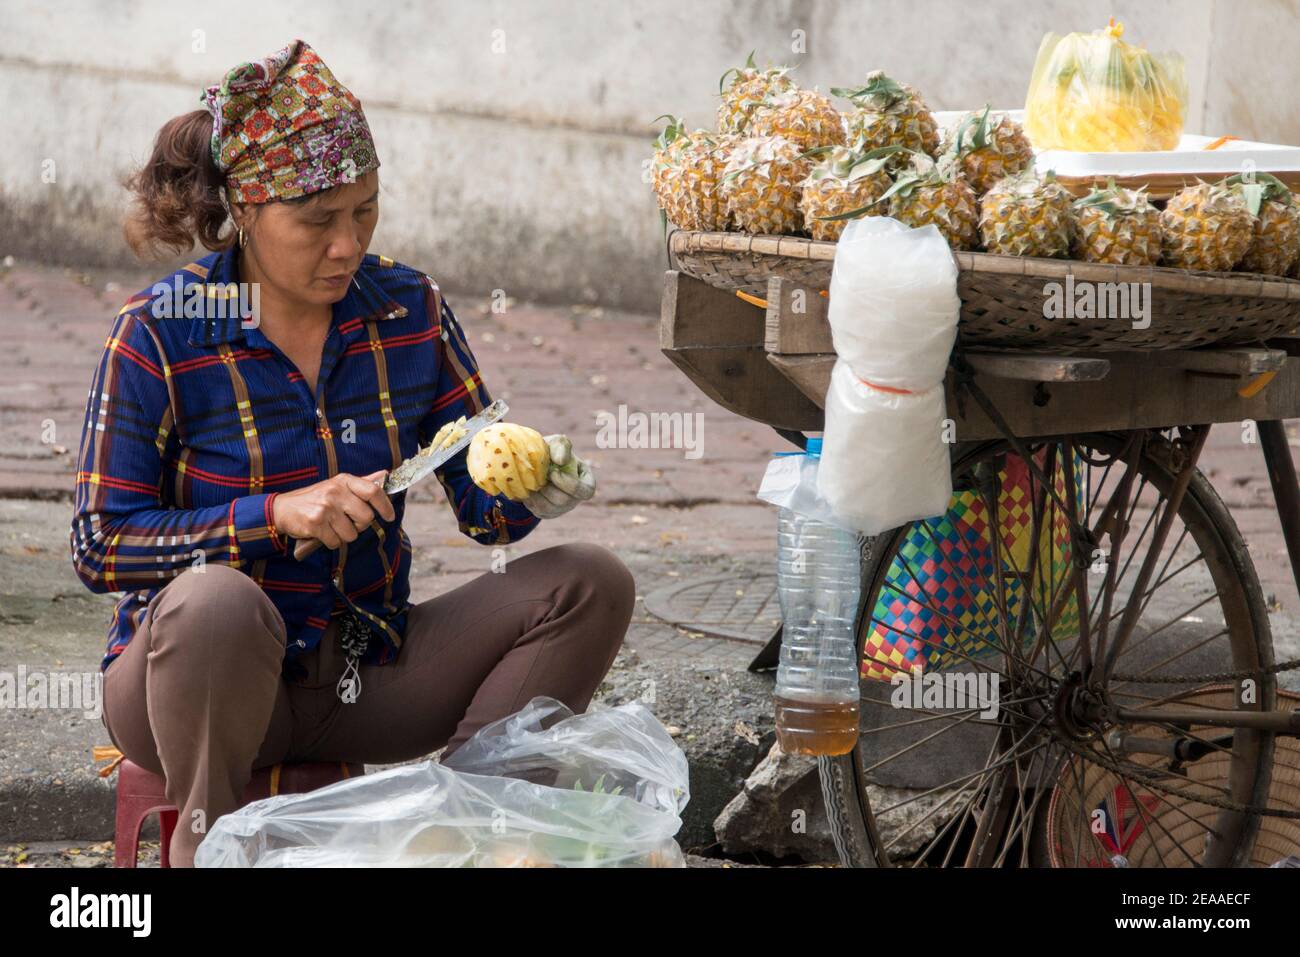 Sculpture à l'ananas sur la route, Hanoi, Vietnam Banque D'Images